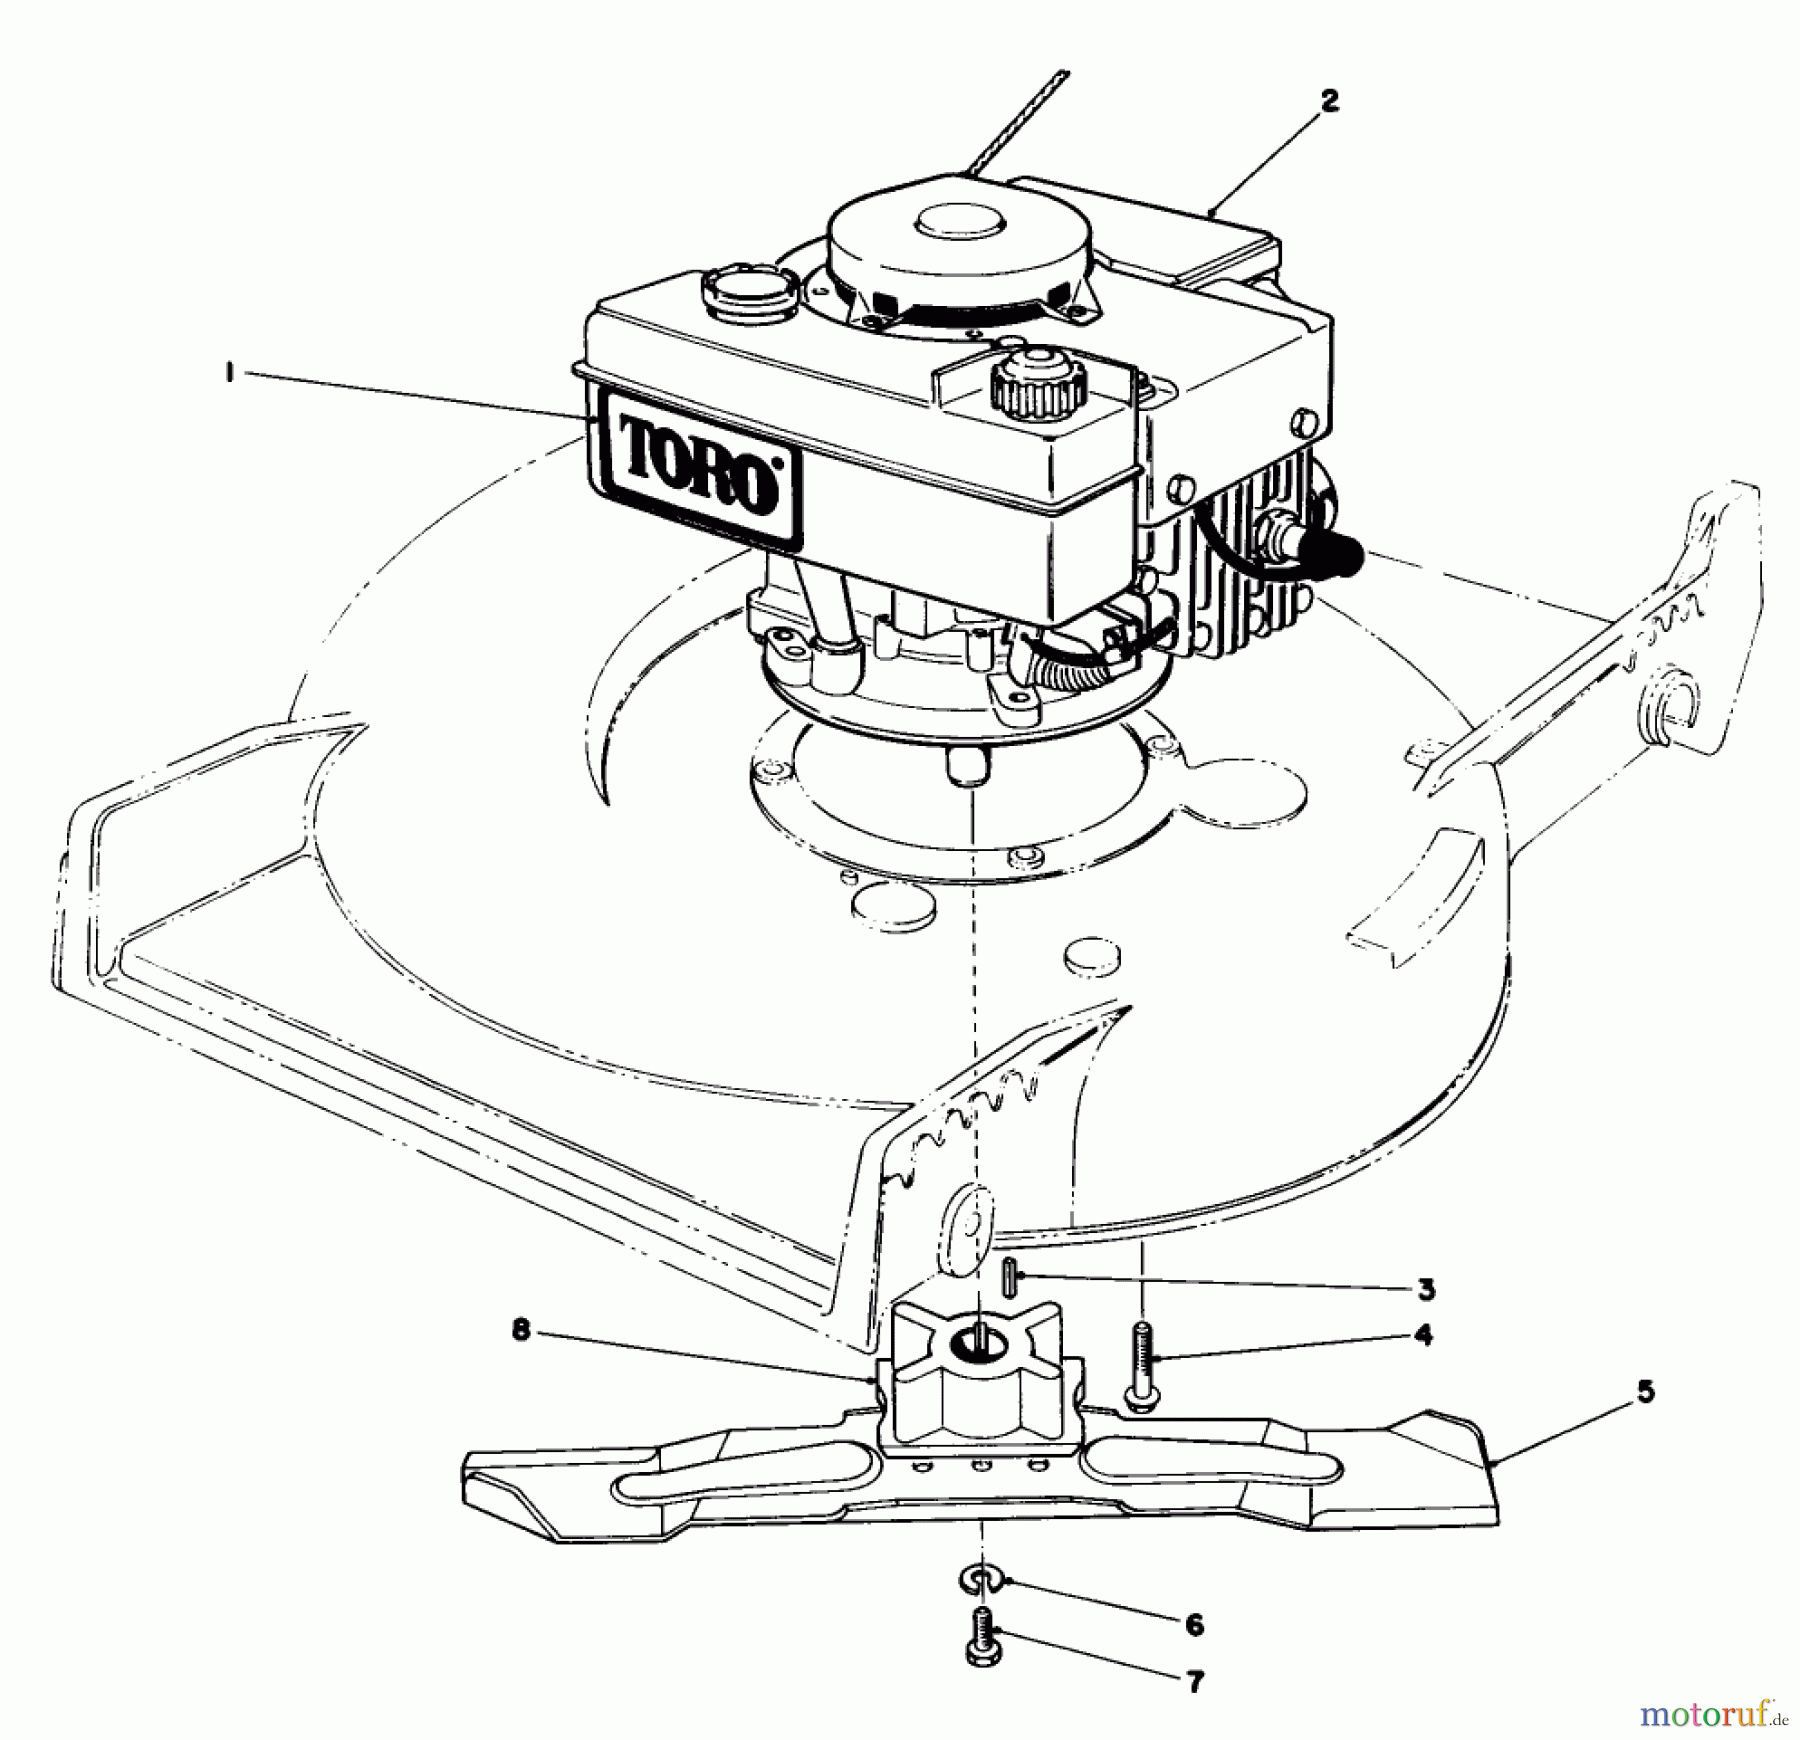  Toro Neu Mowers, Walk-Behind Seite 1 20588 - Toro Lawnmower, 1985 (5000001-5999999) ENGINE ASSEMBLY